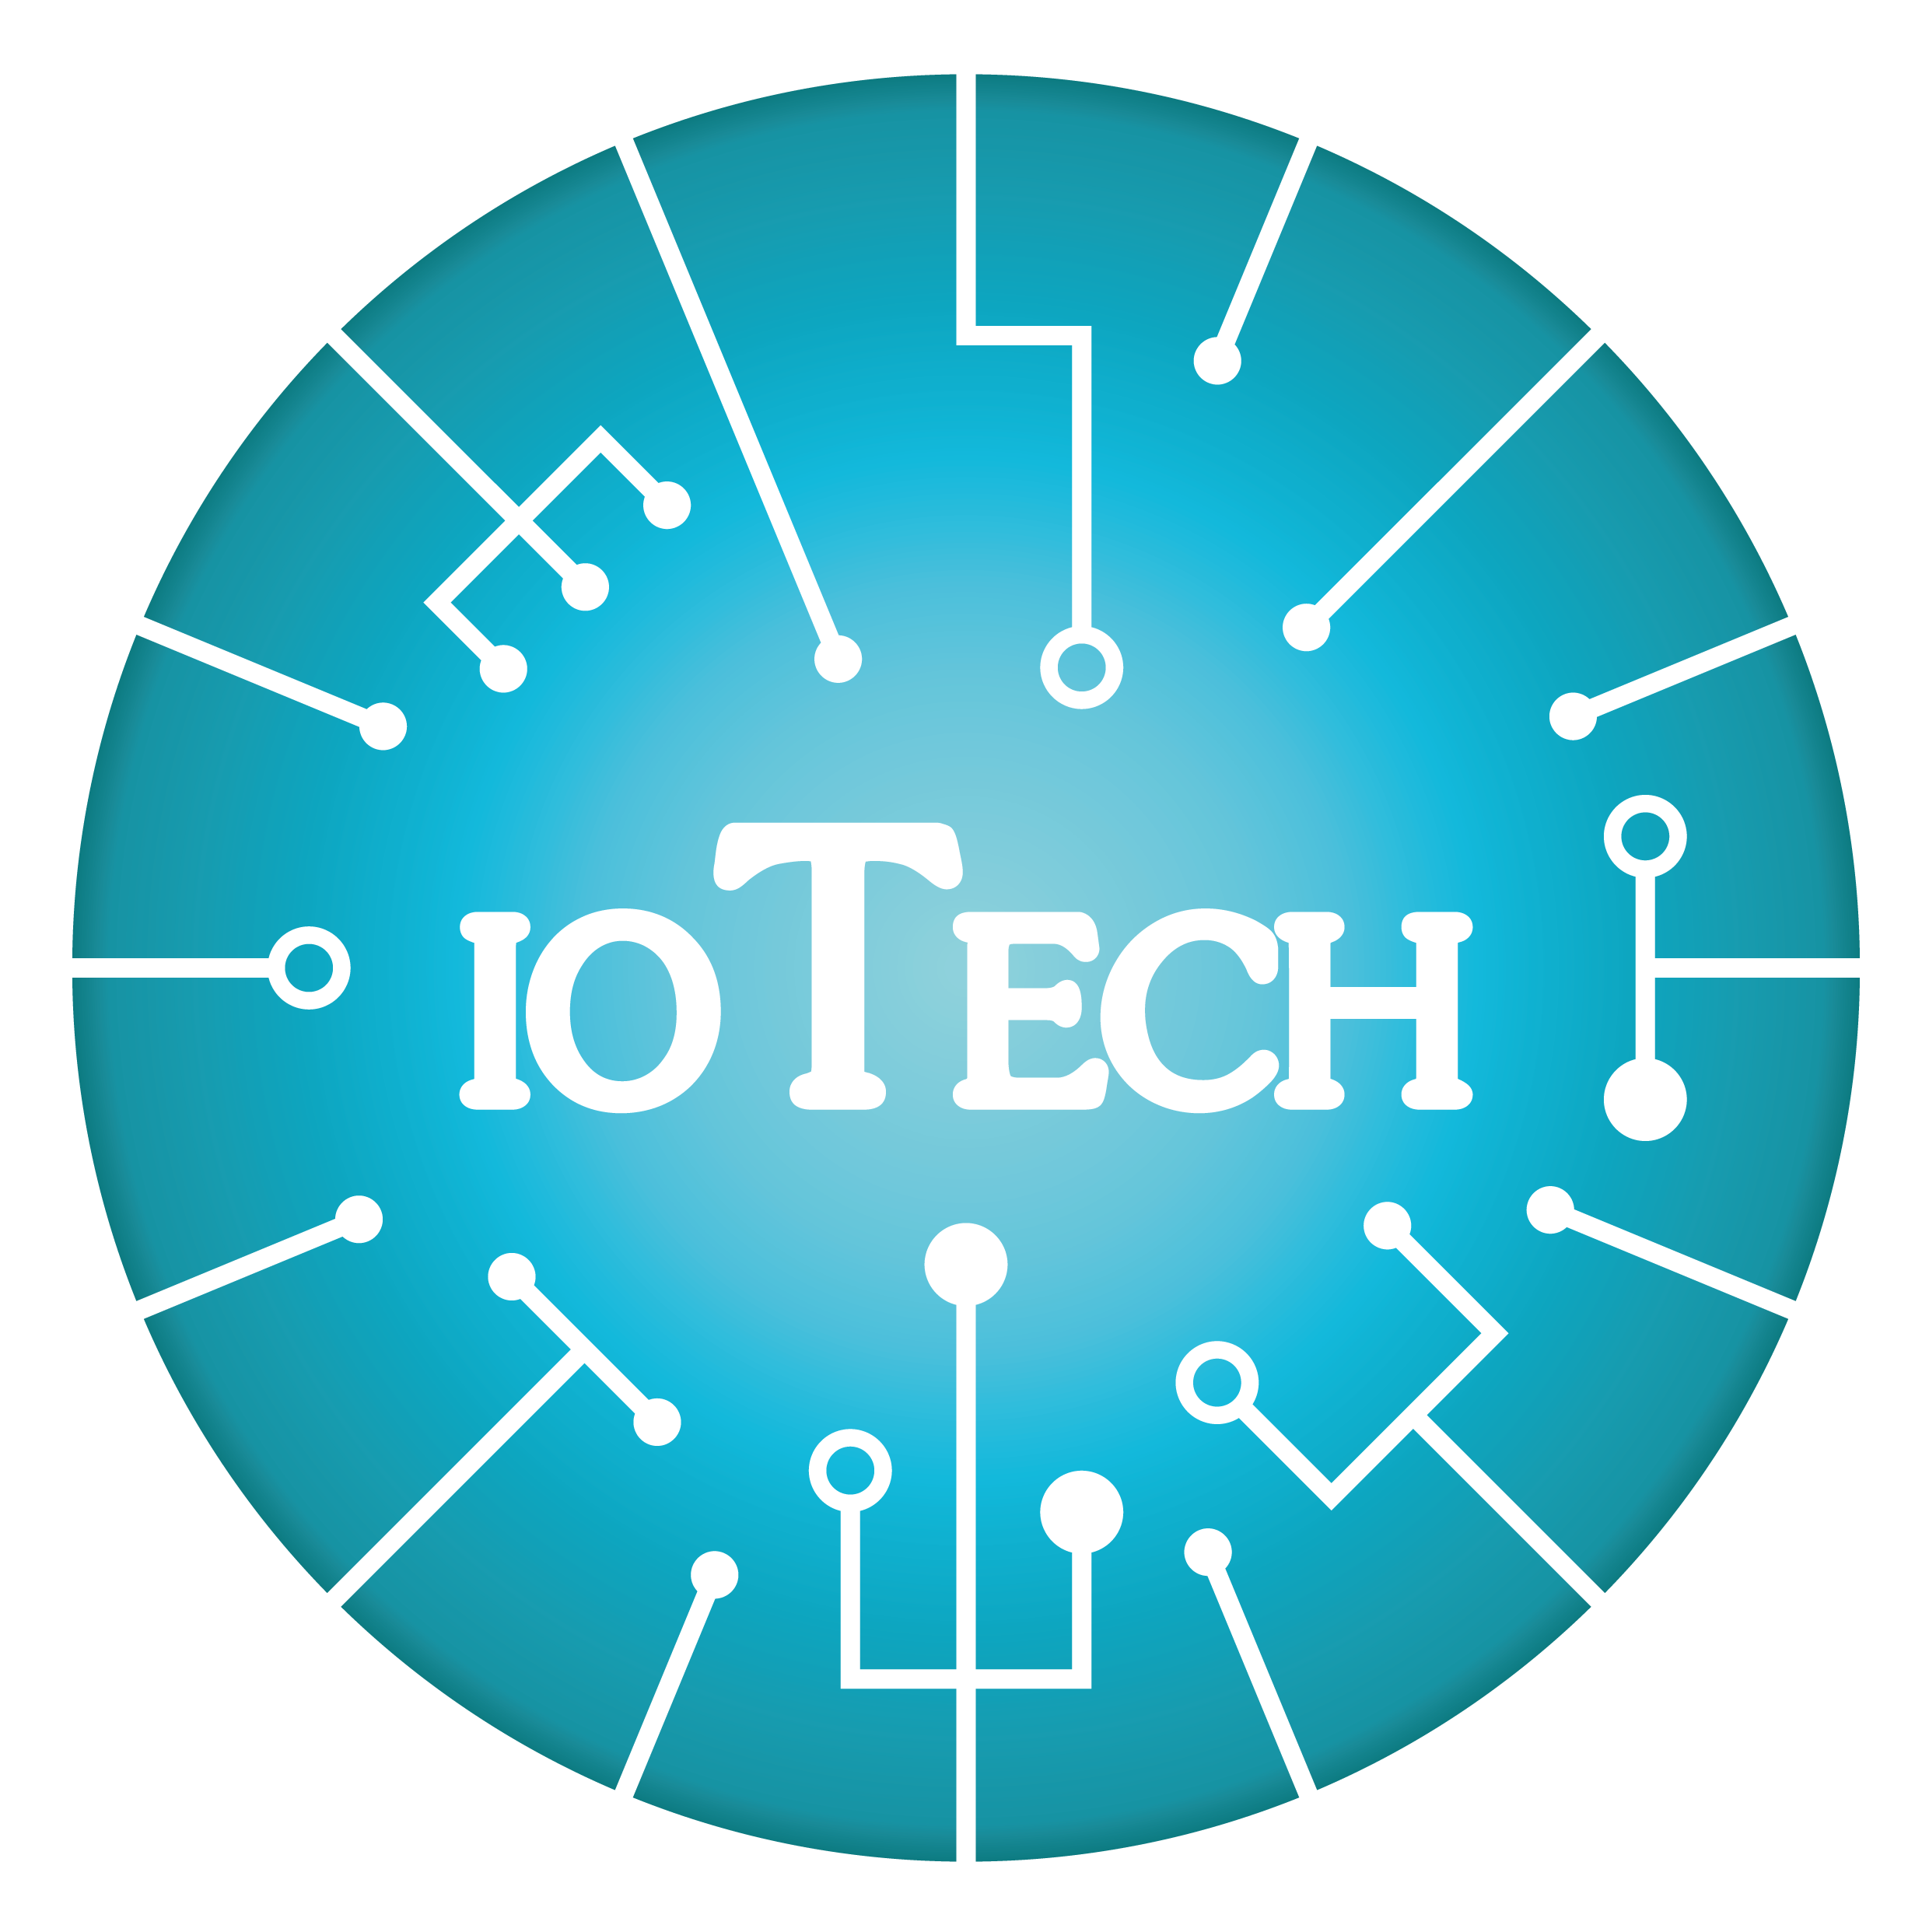 ioTech